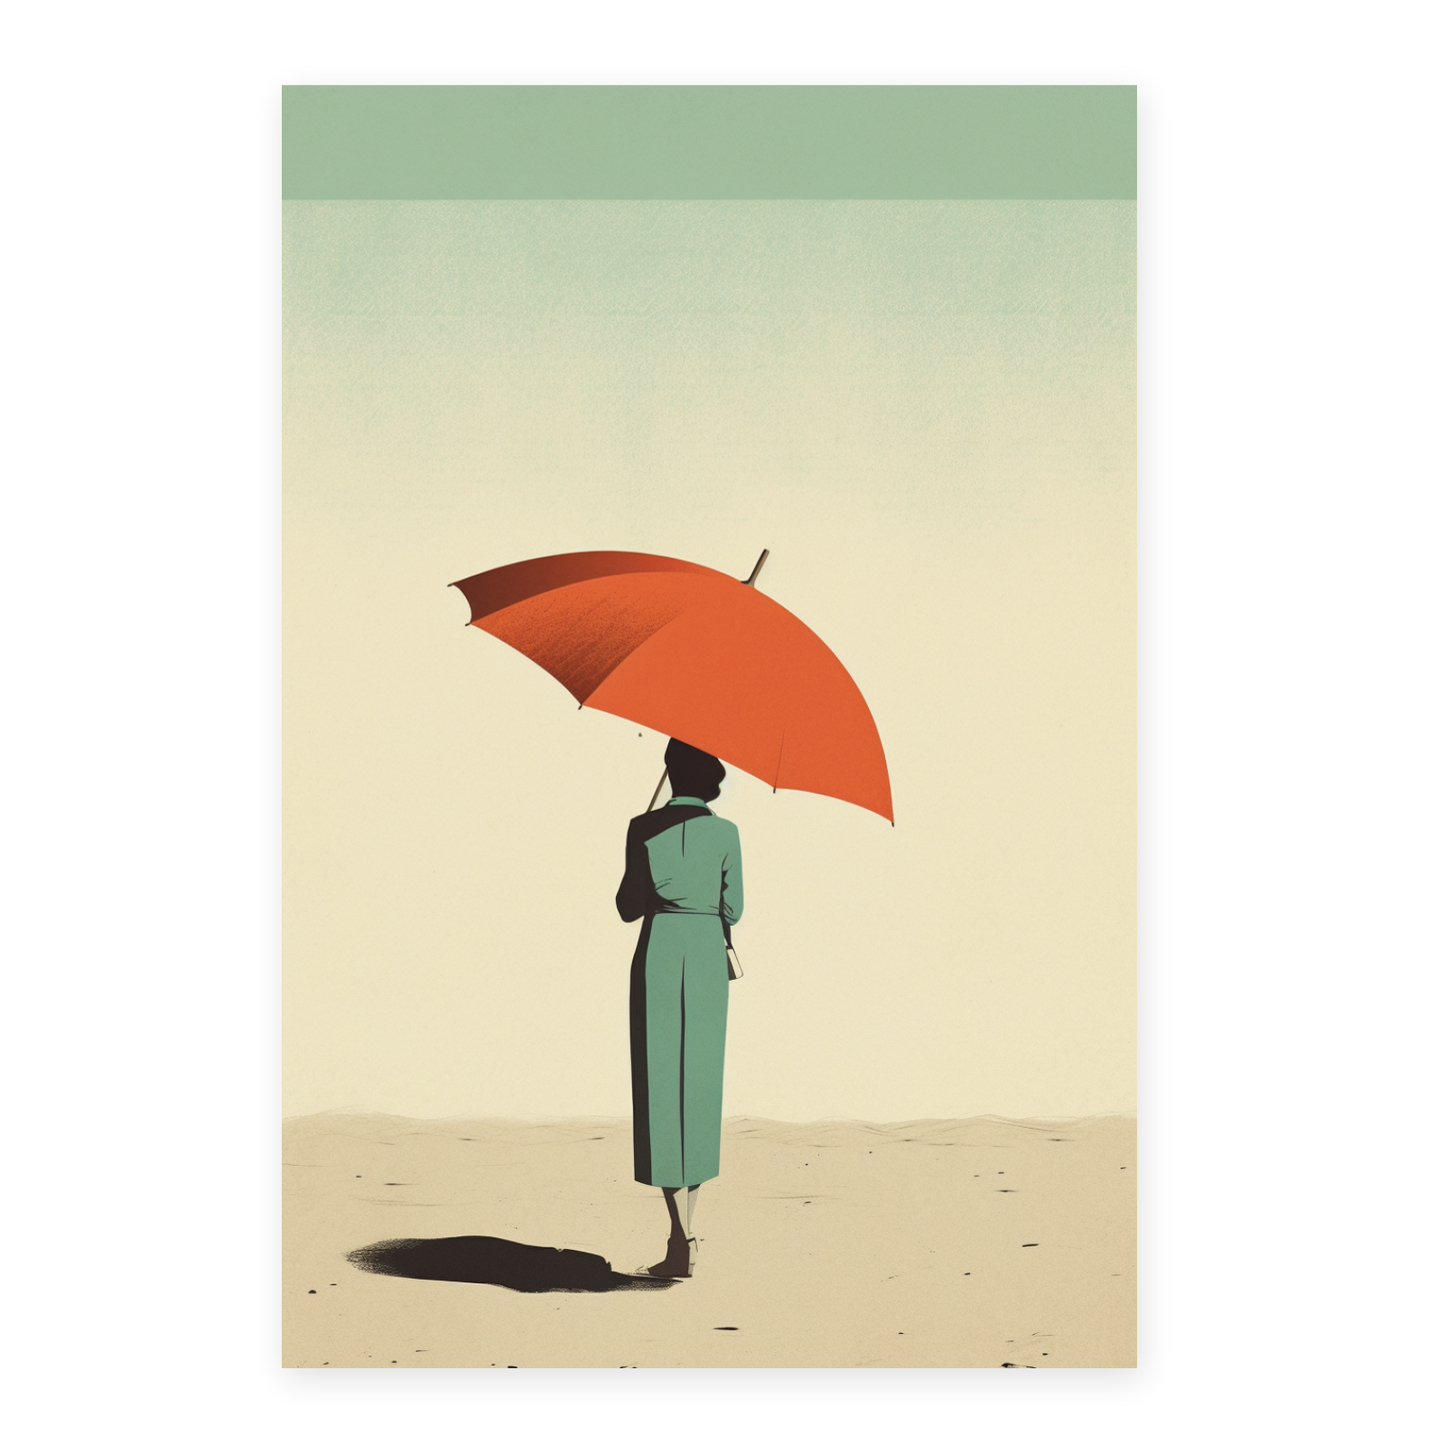 Lamina Gente de la Playa con Parasol por Alessandro Gottardo